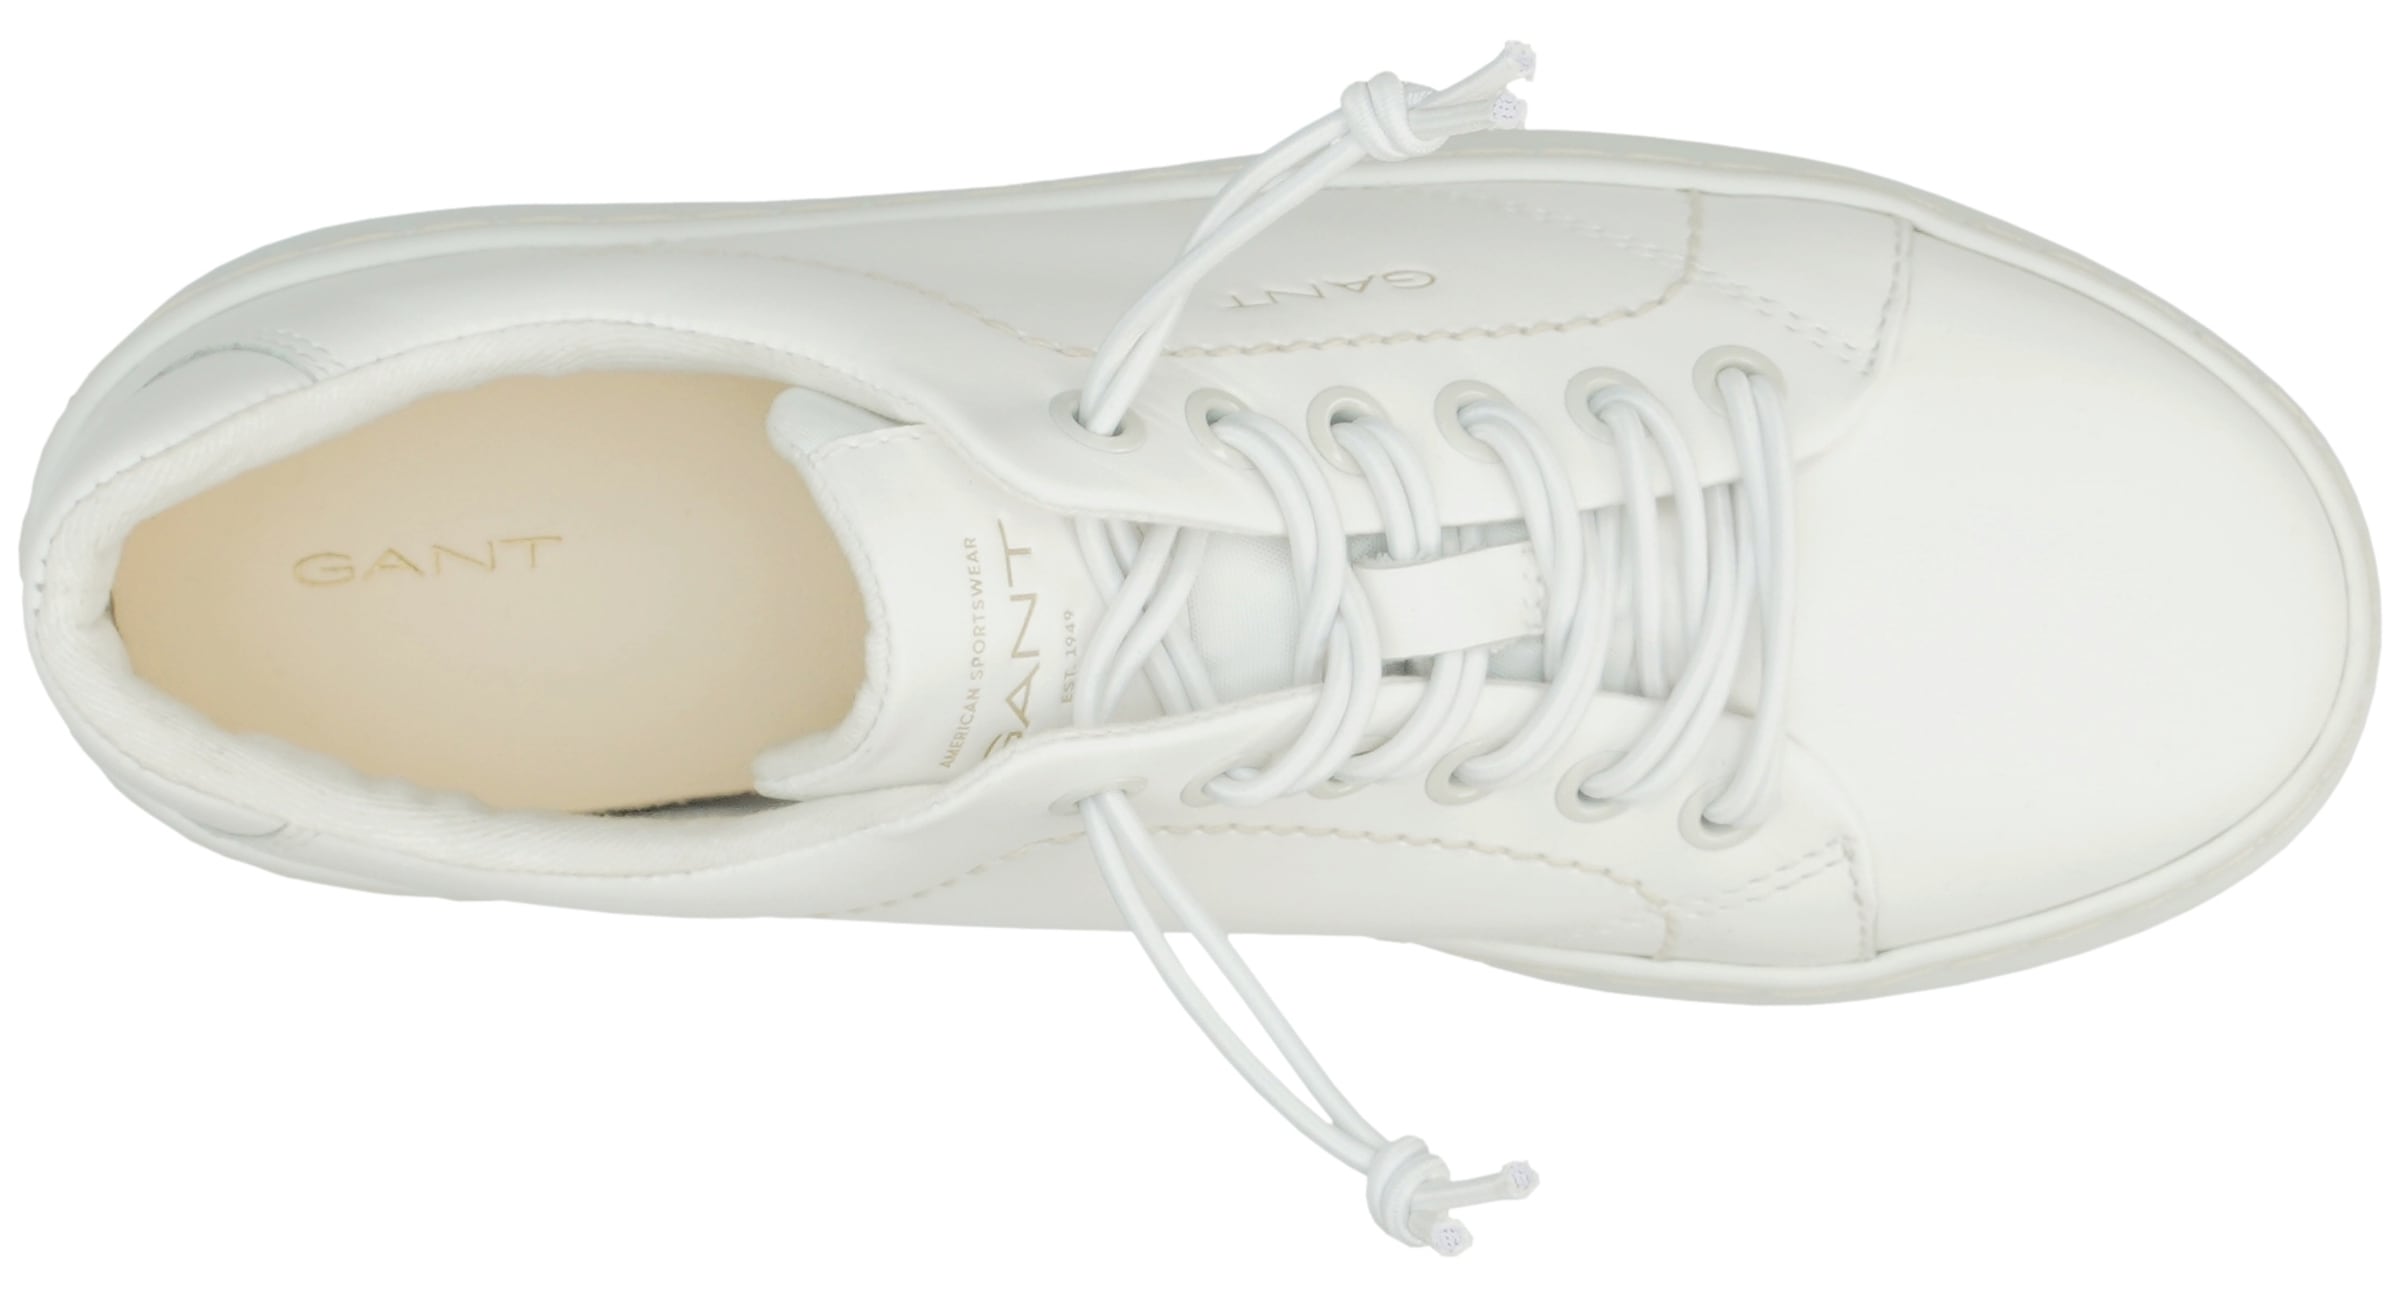 Gant Sneaker »LAWILL«, mit komfortable Lederinnensohle, Freizeitschuh, Halbschuh, Schnürschuh